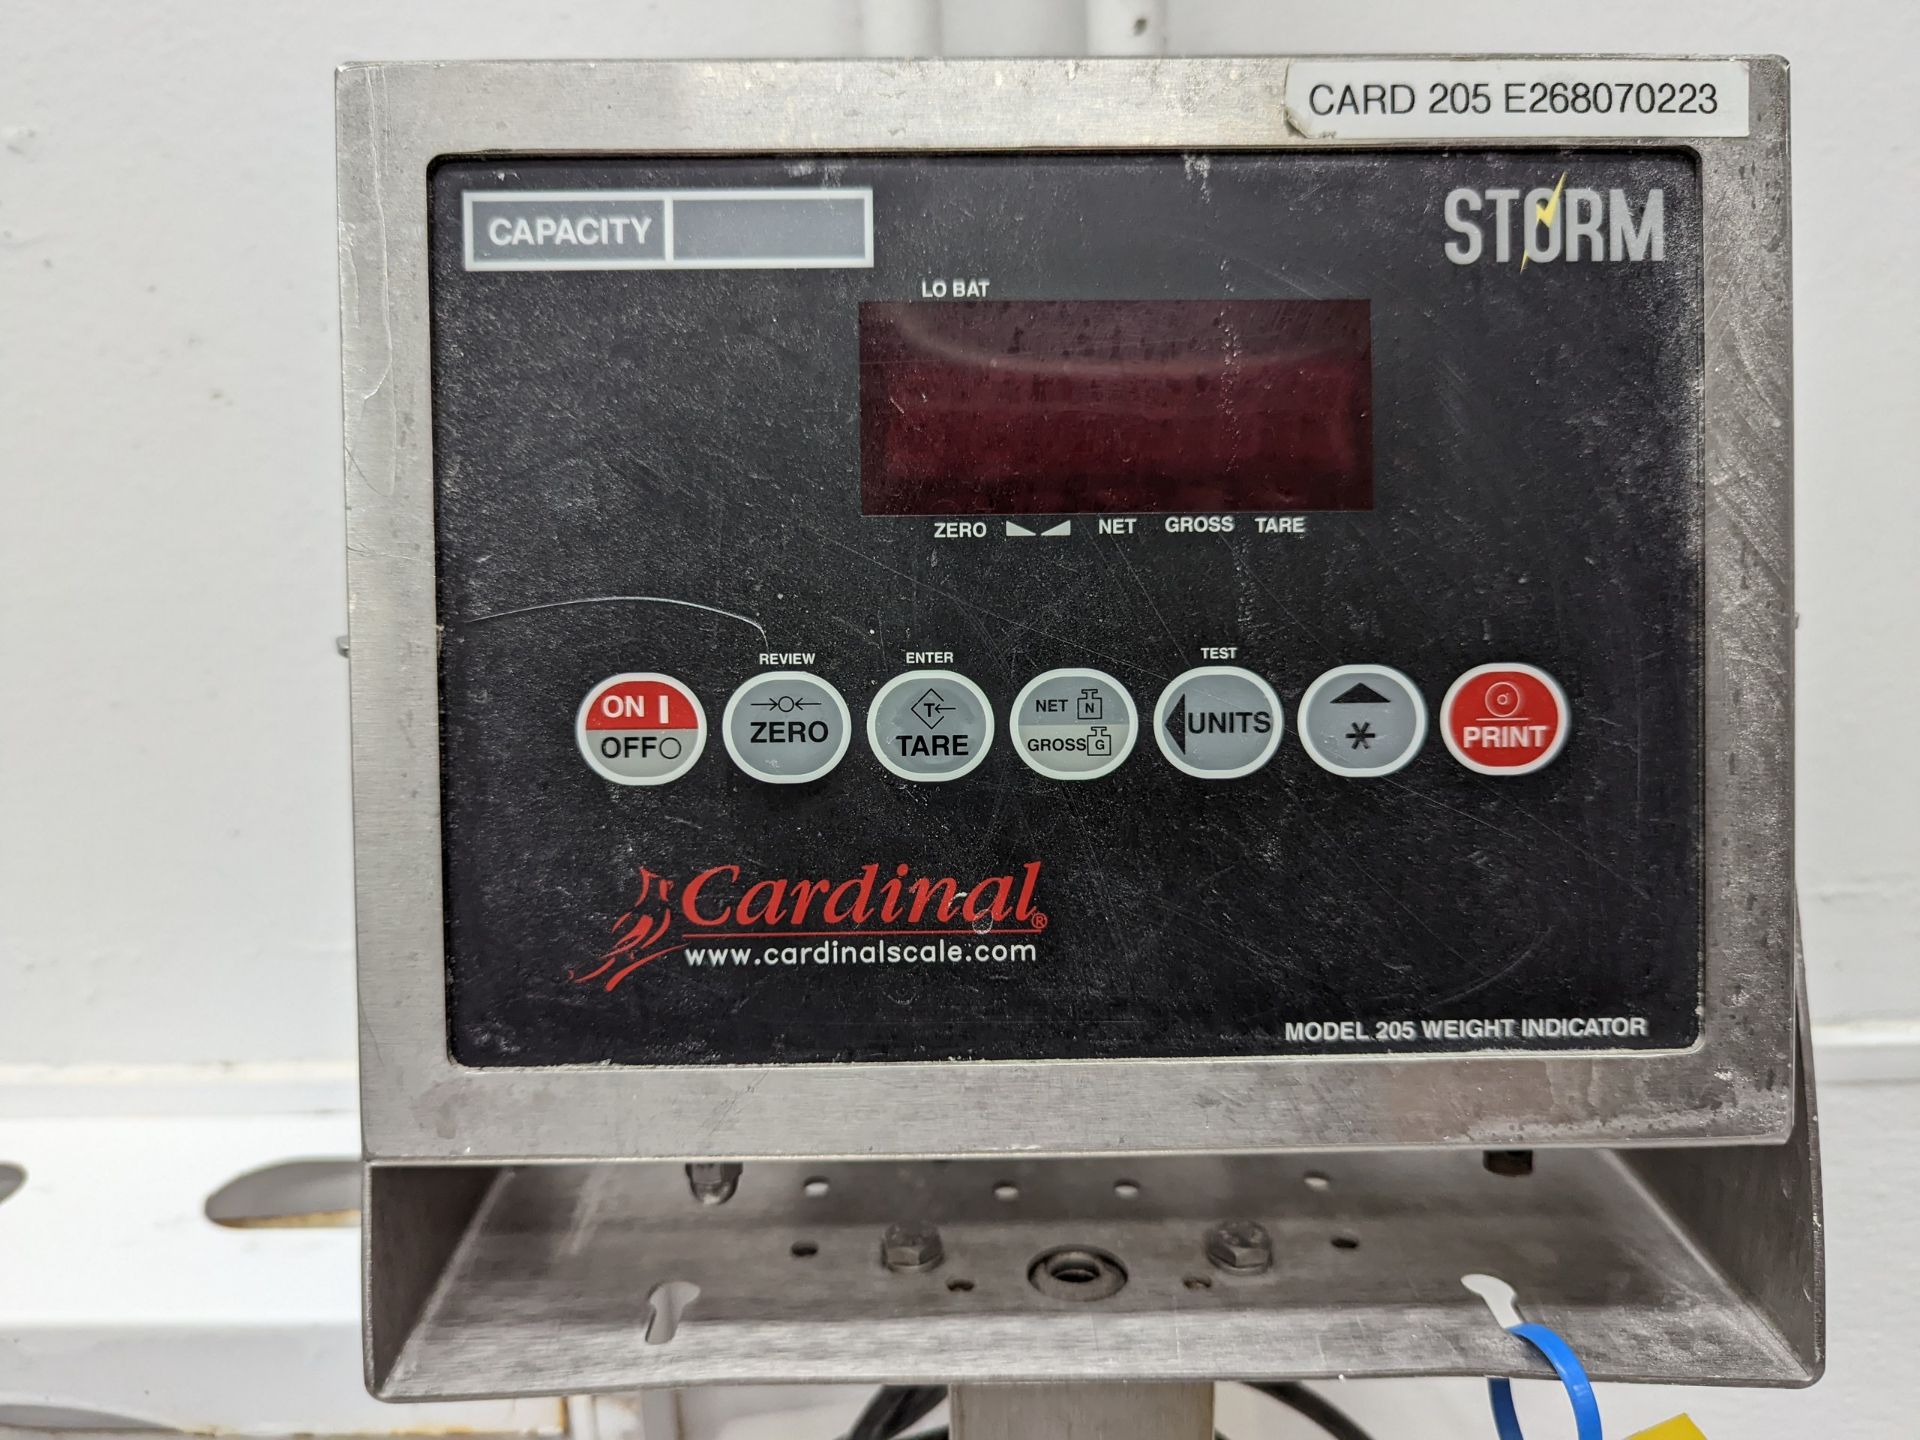 100KG digital scale, Model Cardinal Storm - Image 2 of 7